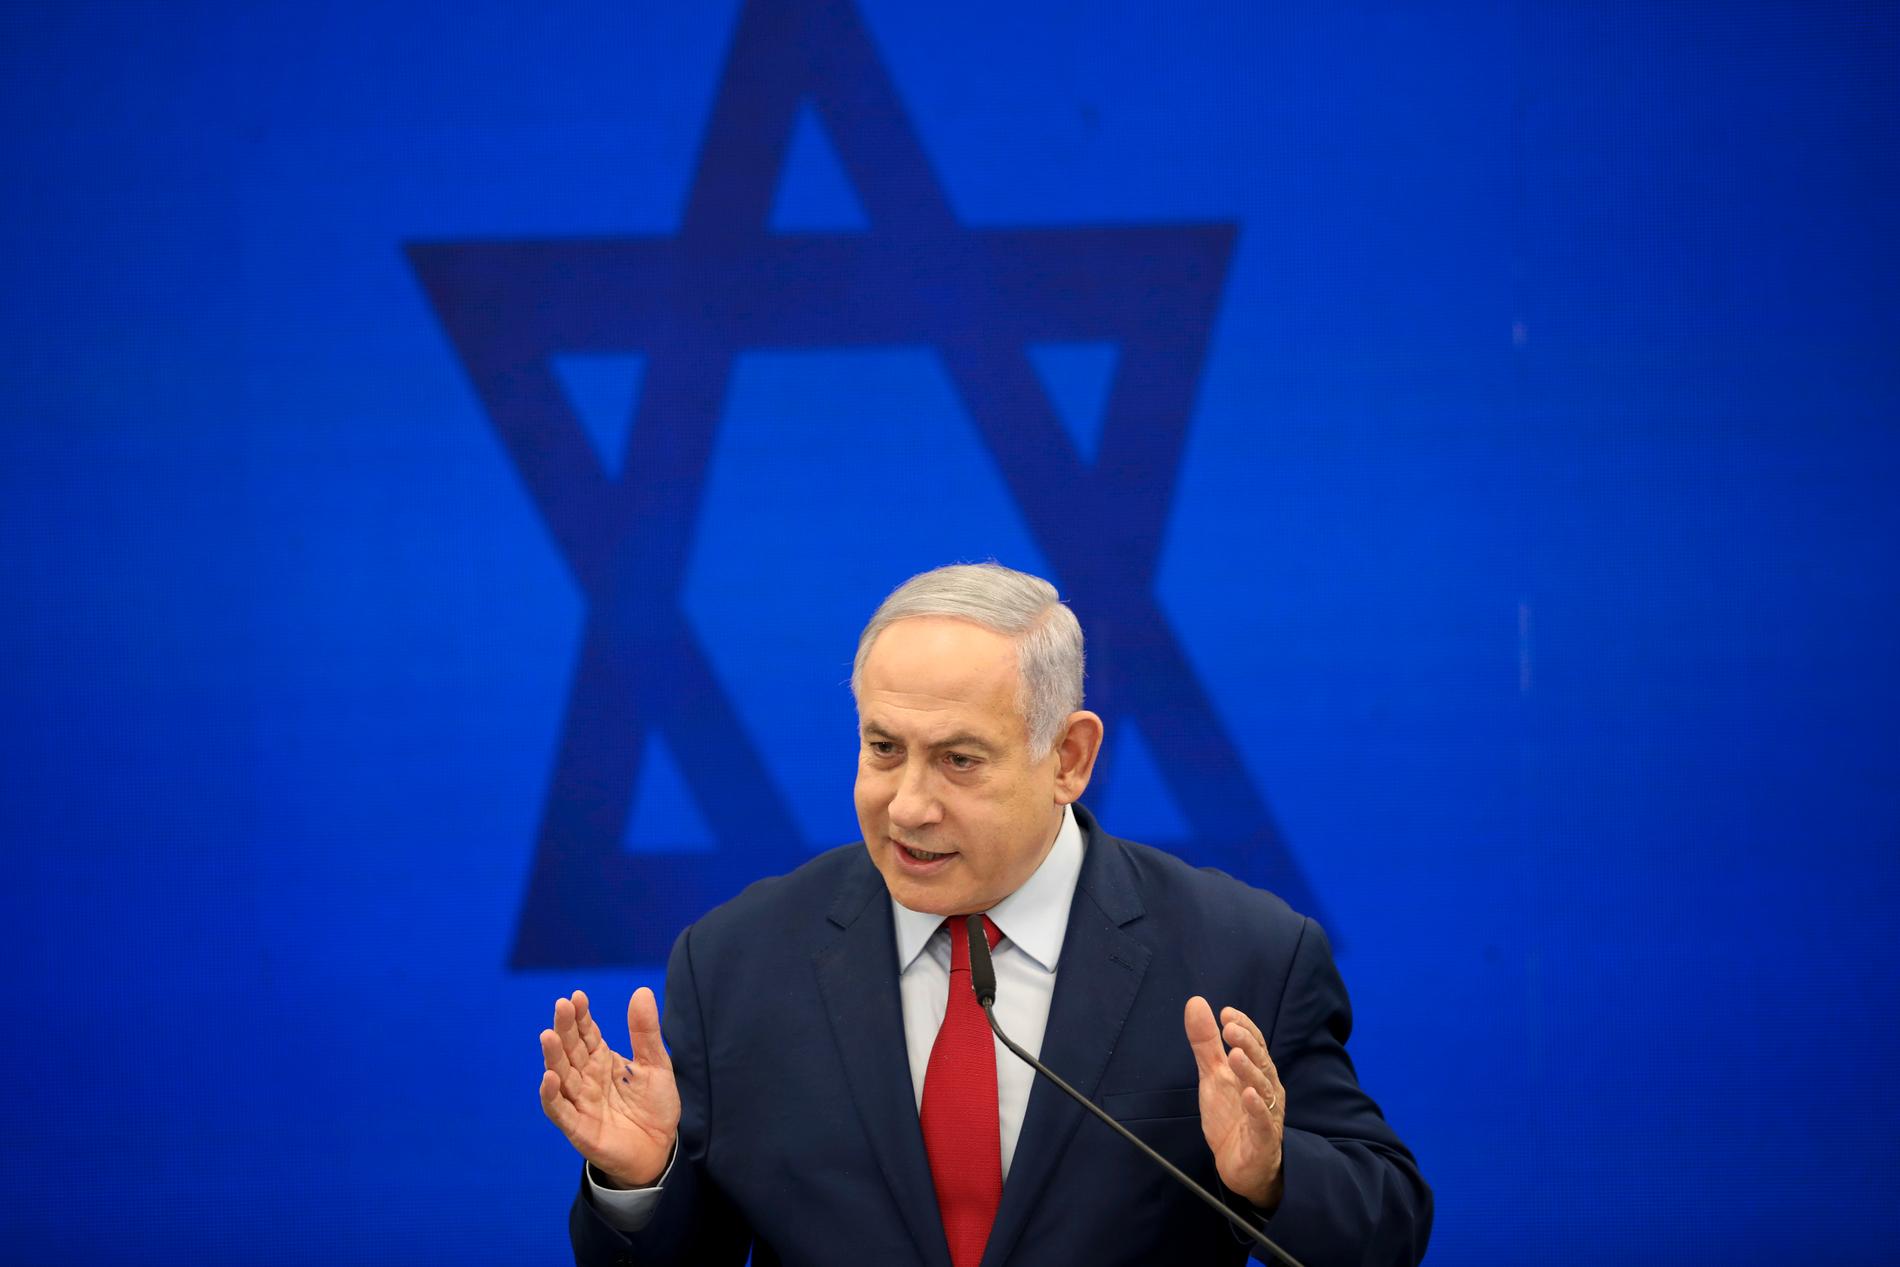 Benjamin Netanyahu kampanjar för fullt inför Israels nyval, som hålls om en vecka. Här framträder han i Tel Aviv på tisdagen.